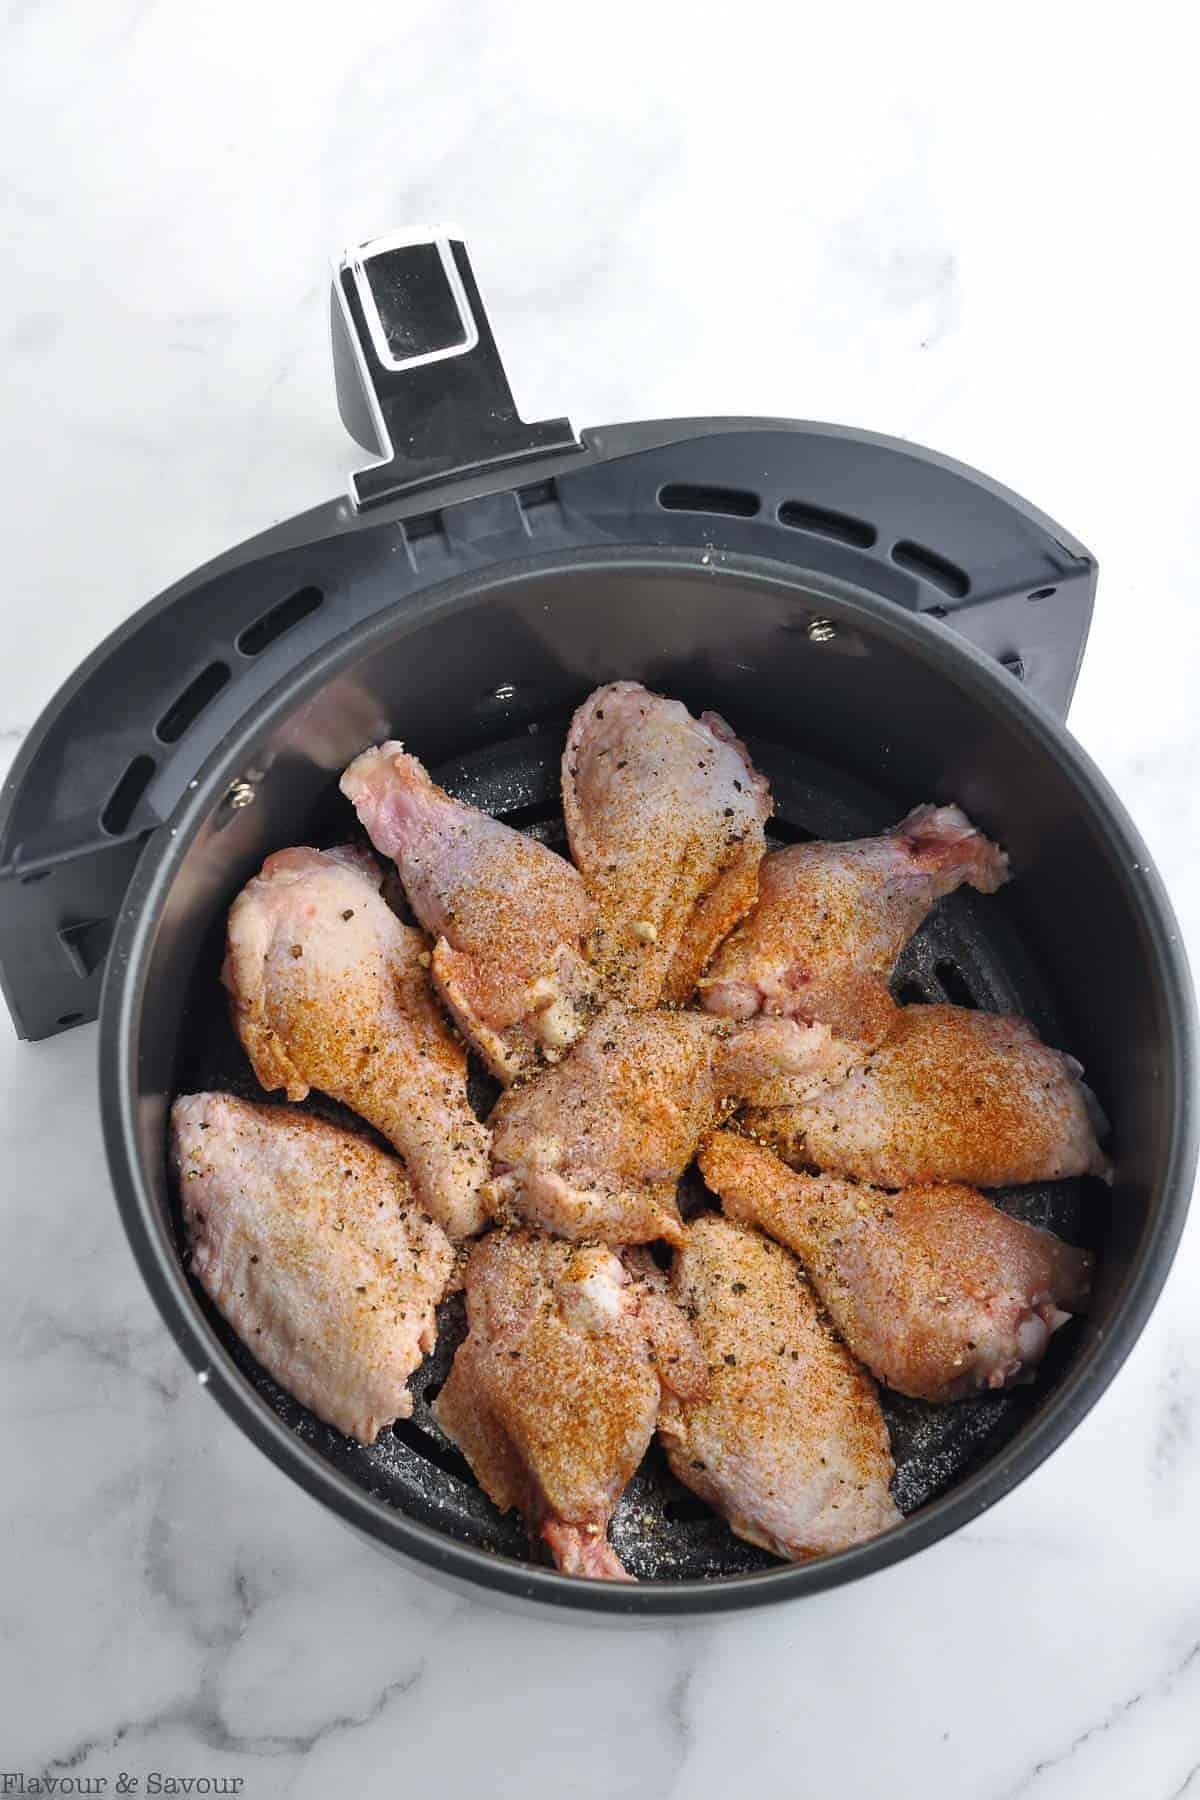 Uncooked chicken wings sprinkled with seasonings